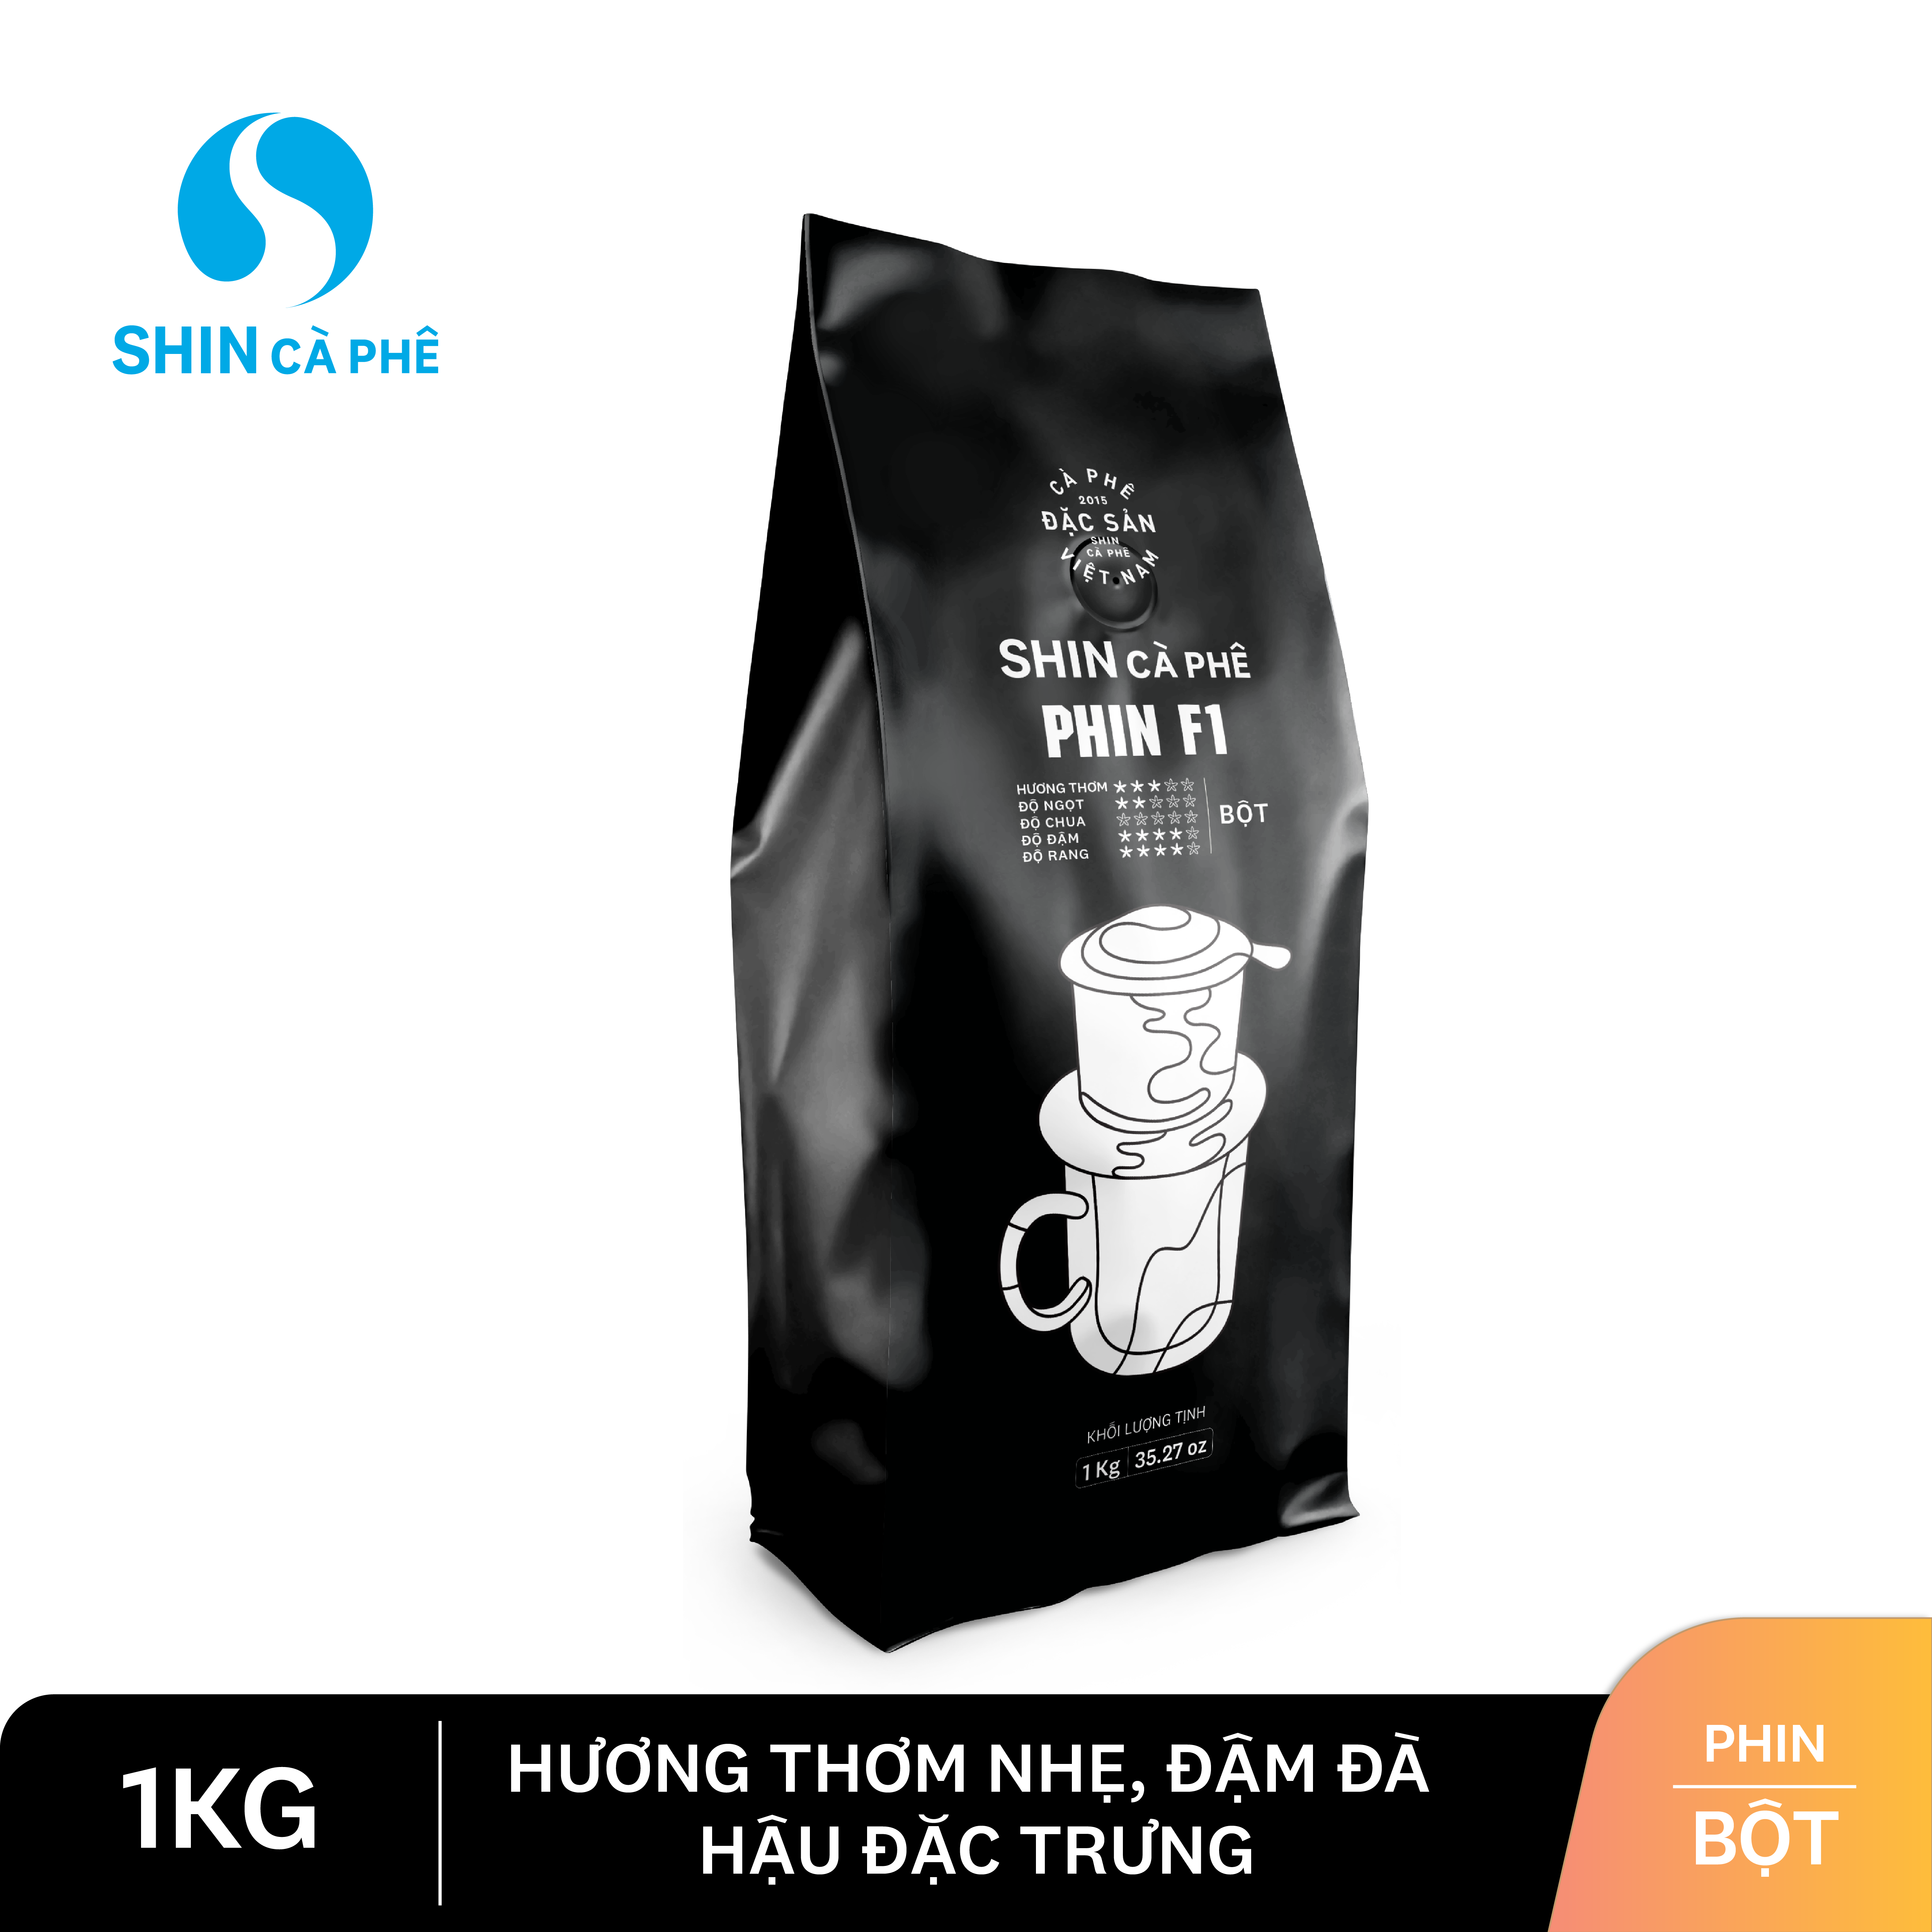 SHIN cà phê - Phin F1 1kg - Cà phê nguyên chất pha phin